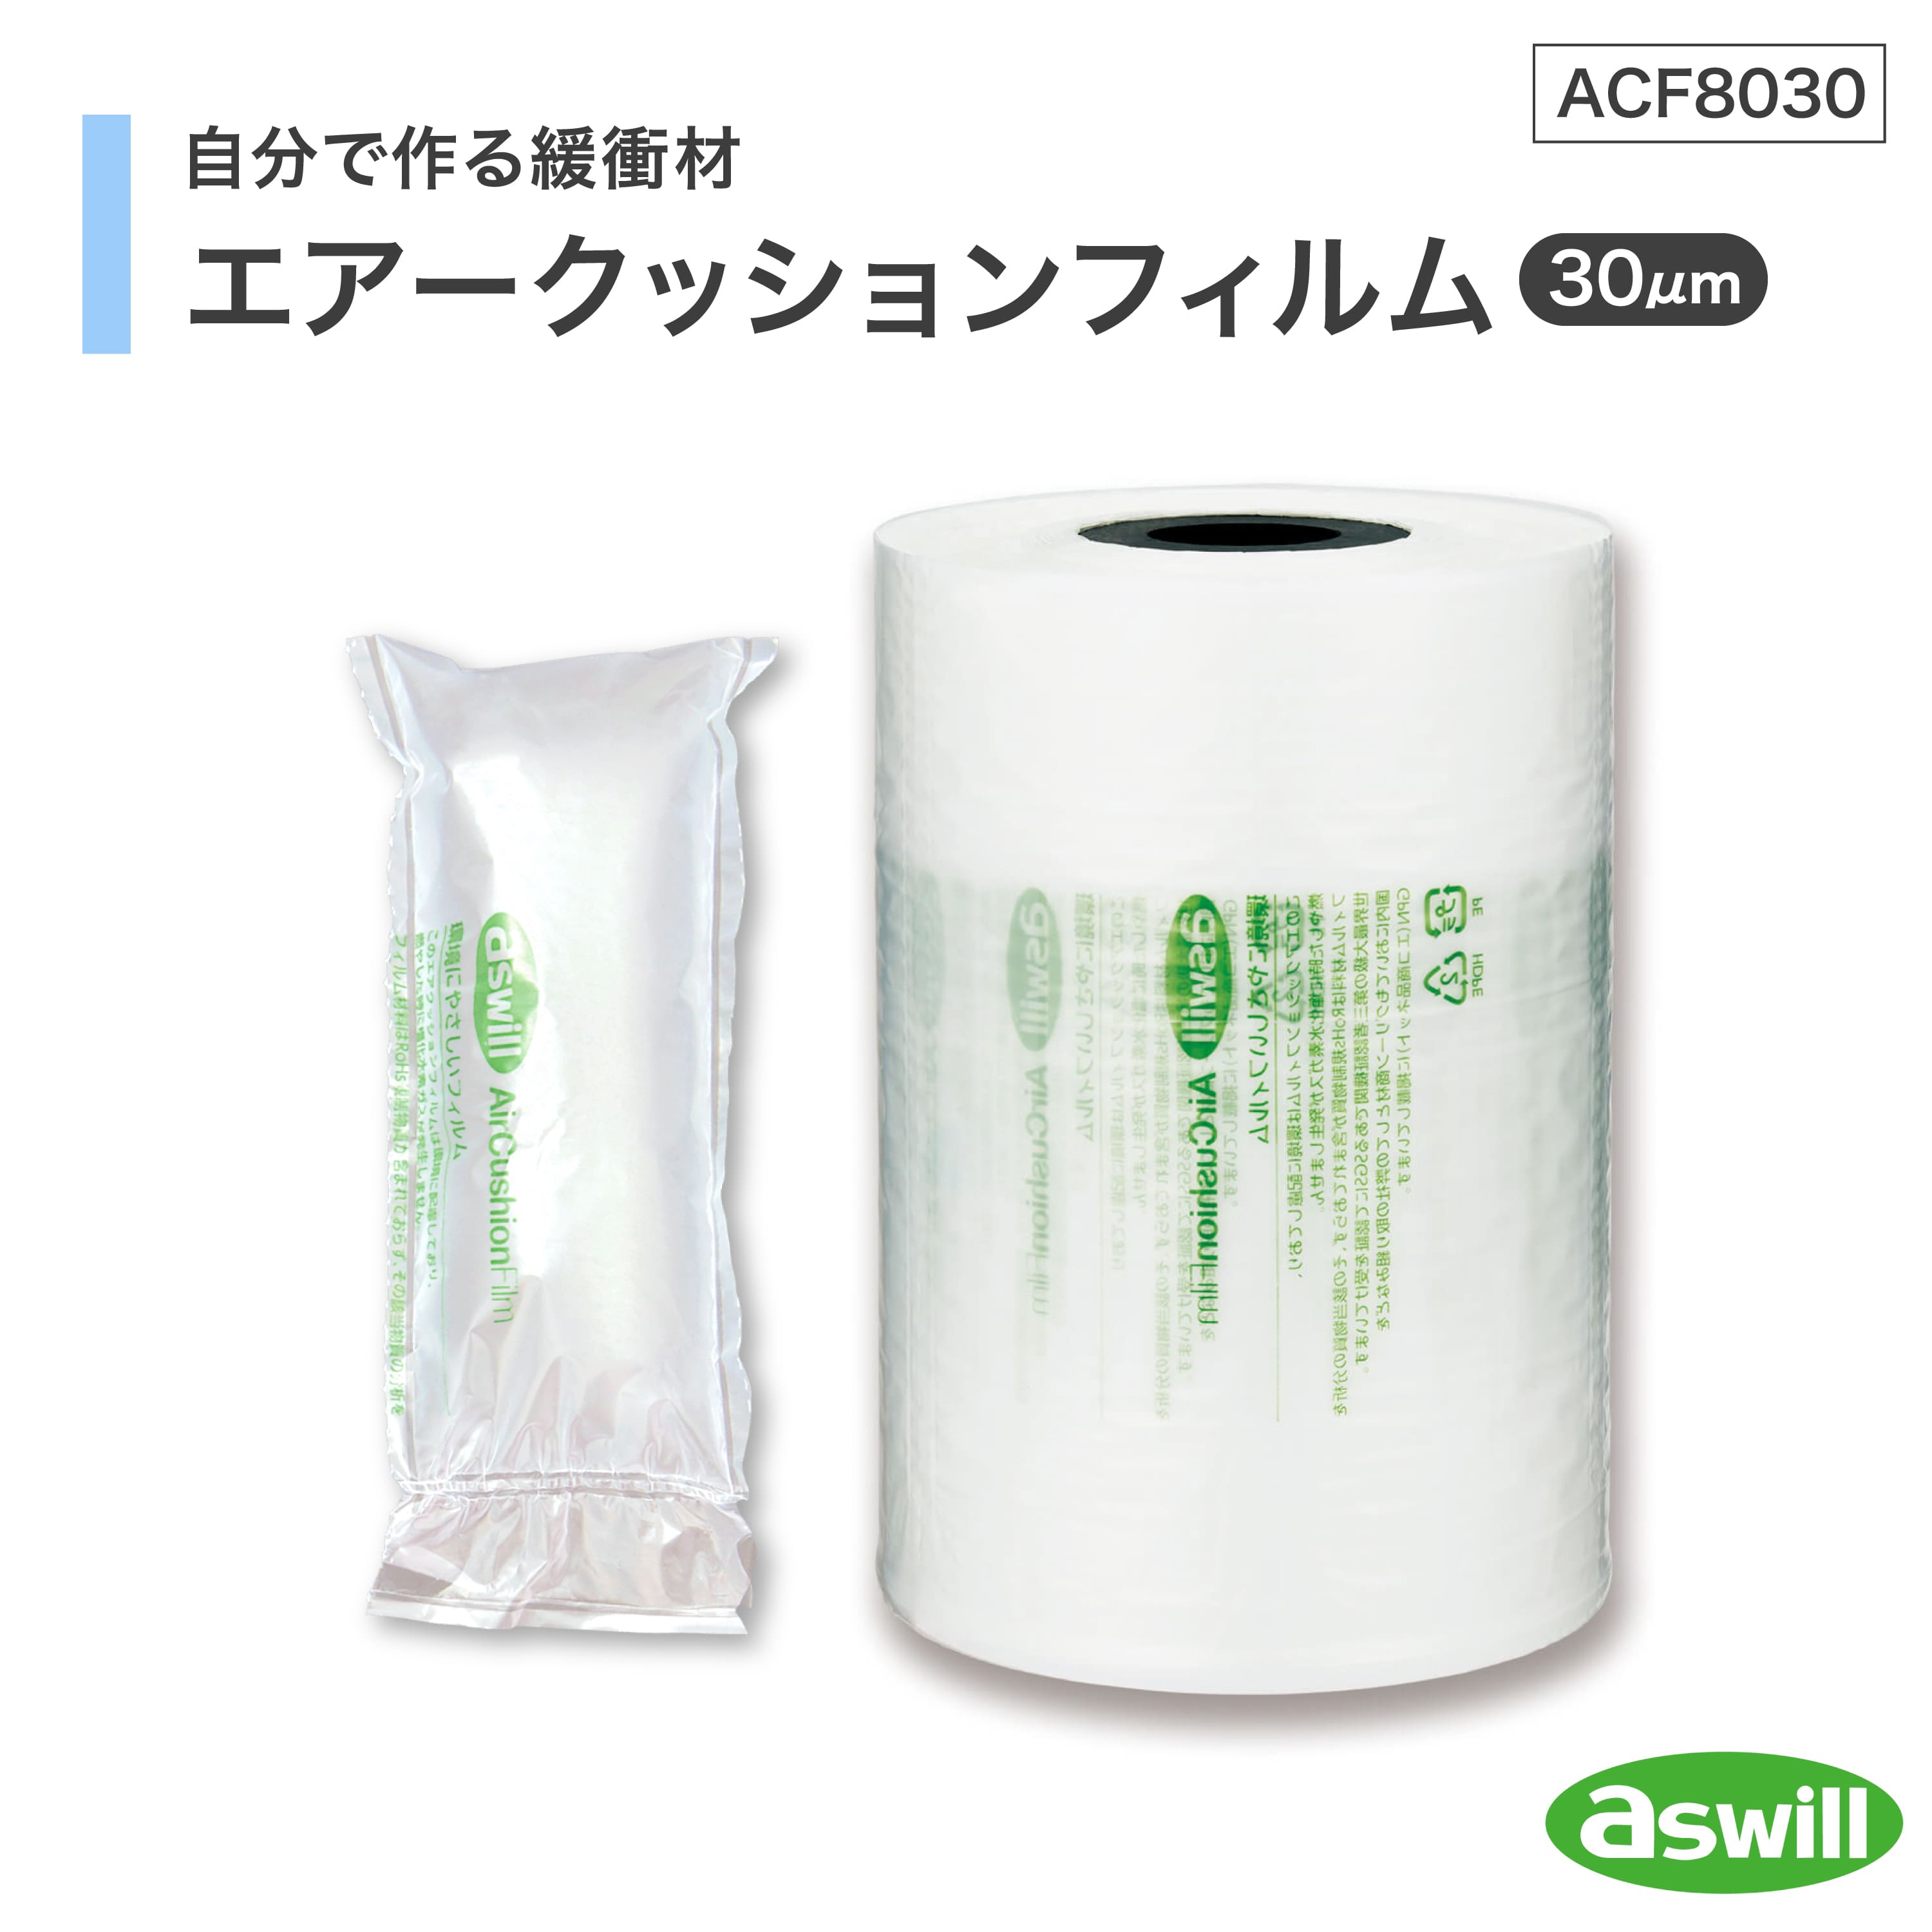 アスカ【緩衝材】エアークッションフィルム 厚口タイプ ACF8030